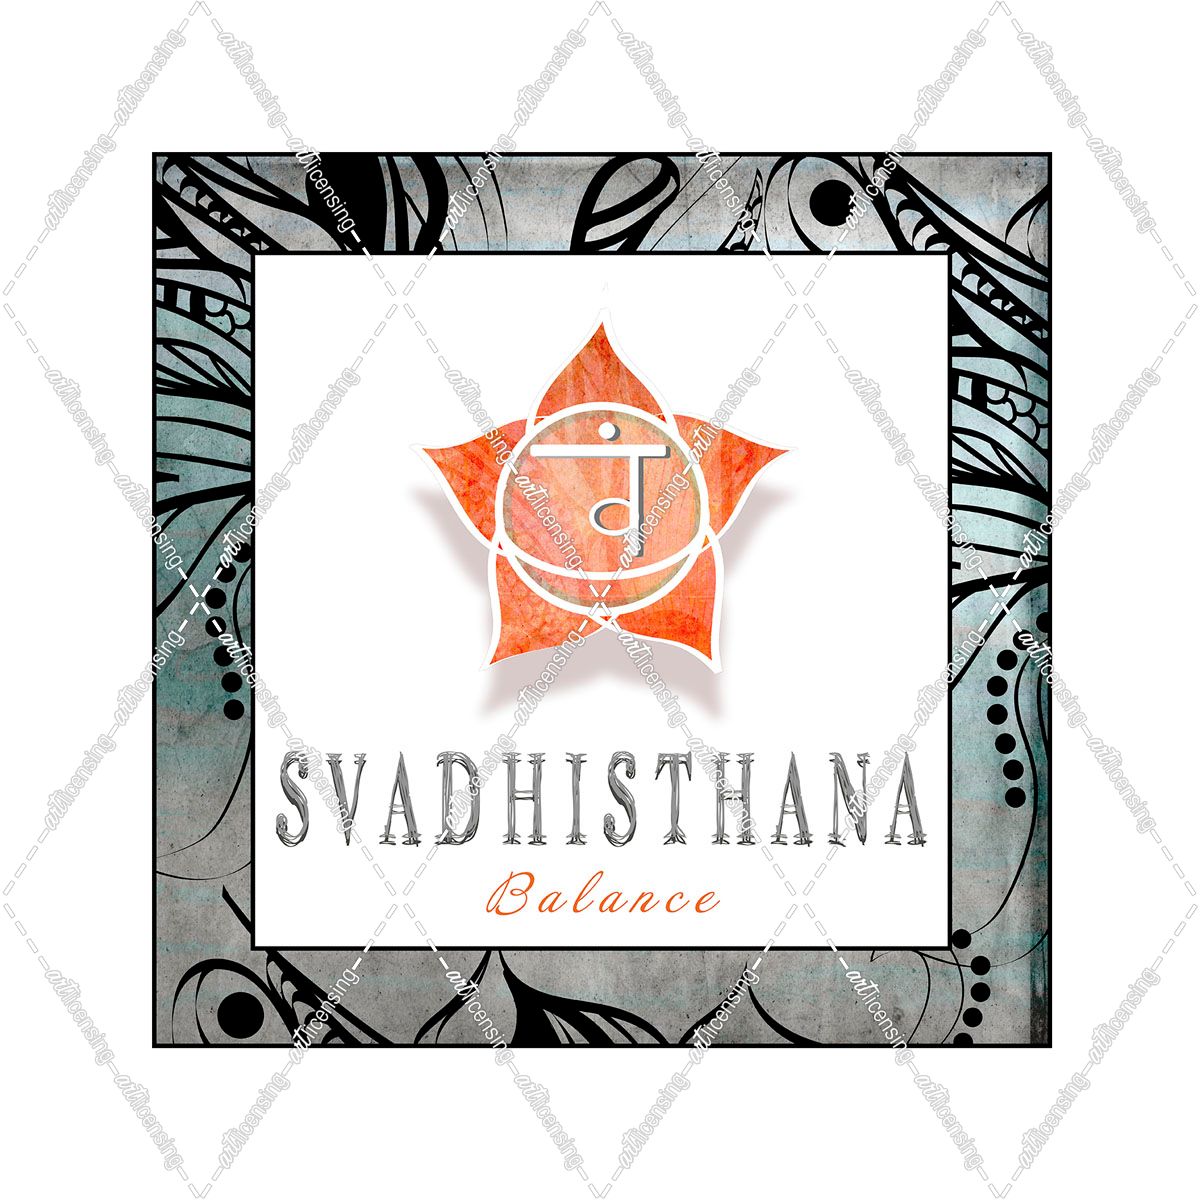 ChakrasYogaFramed_Svadhisthana V3